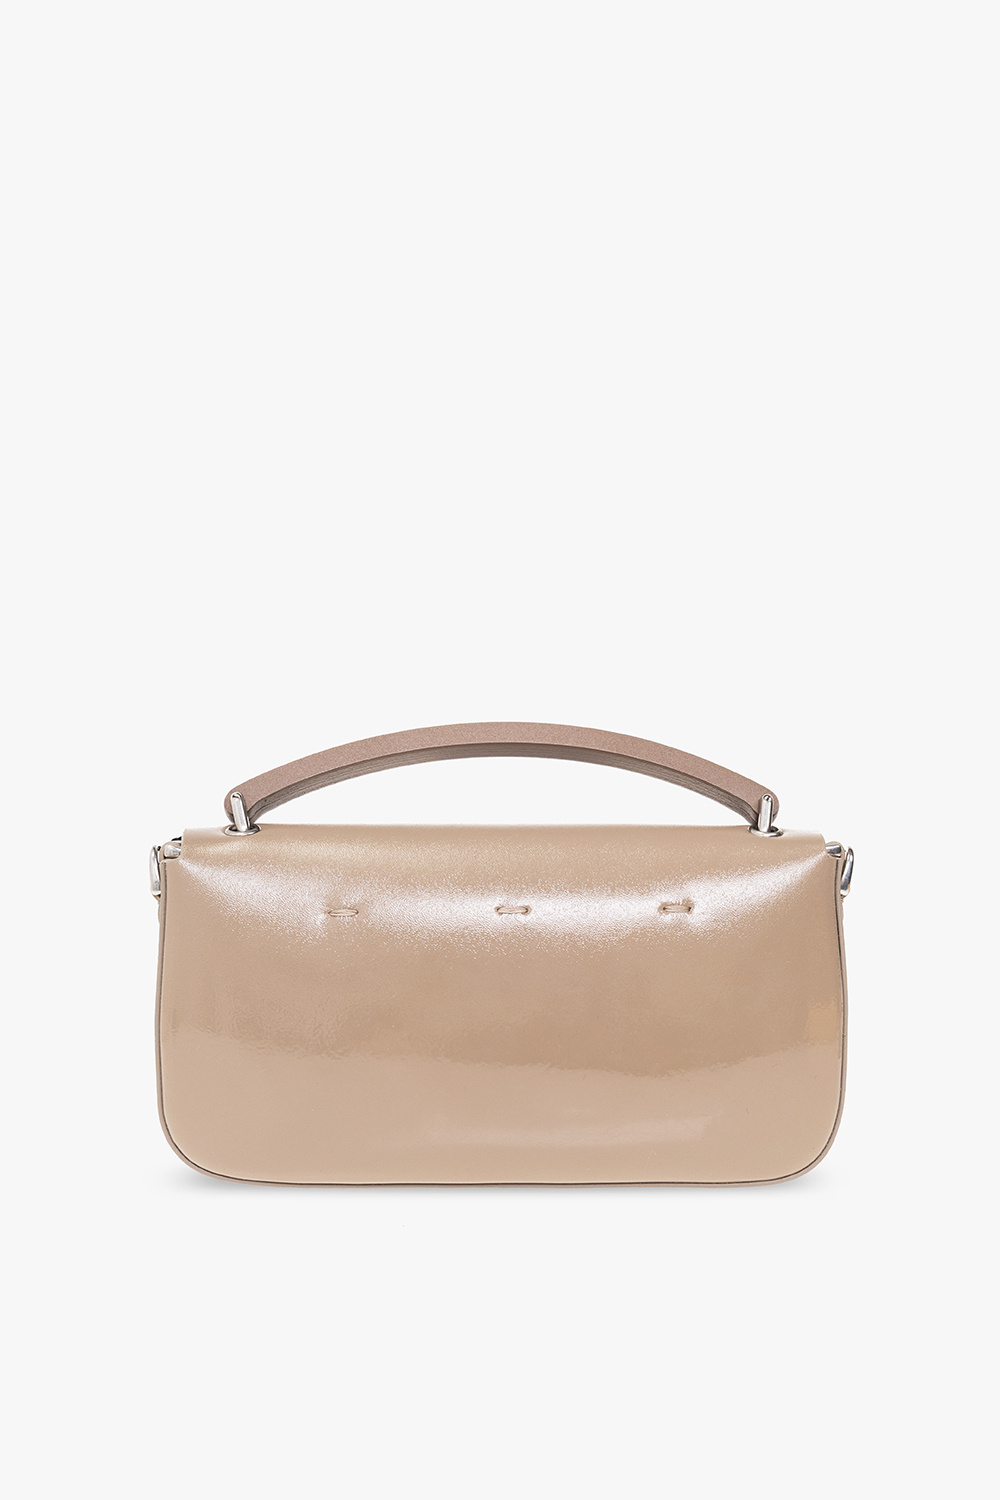 Fendi ‘Baguette’ shoulder bag